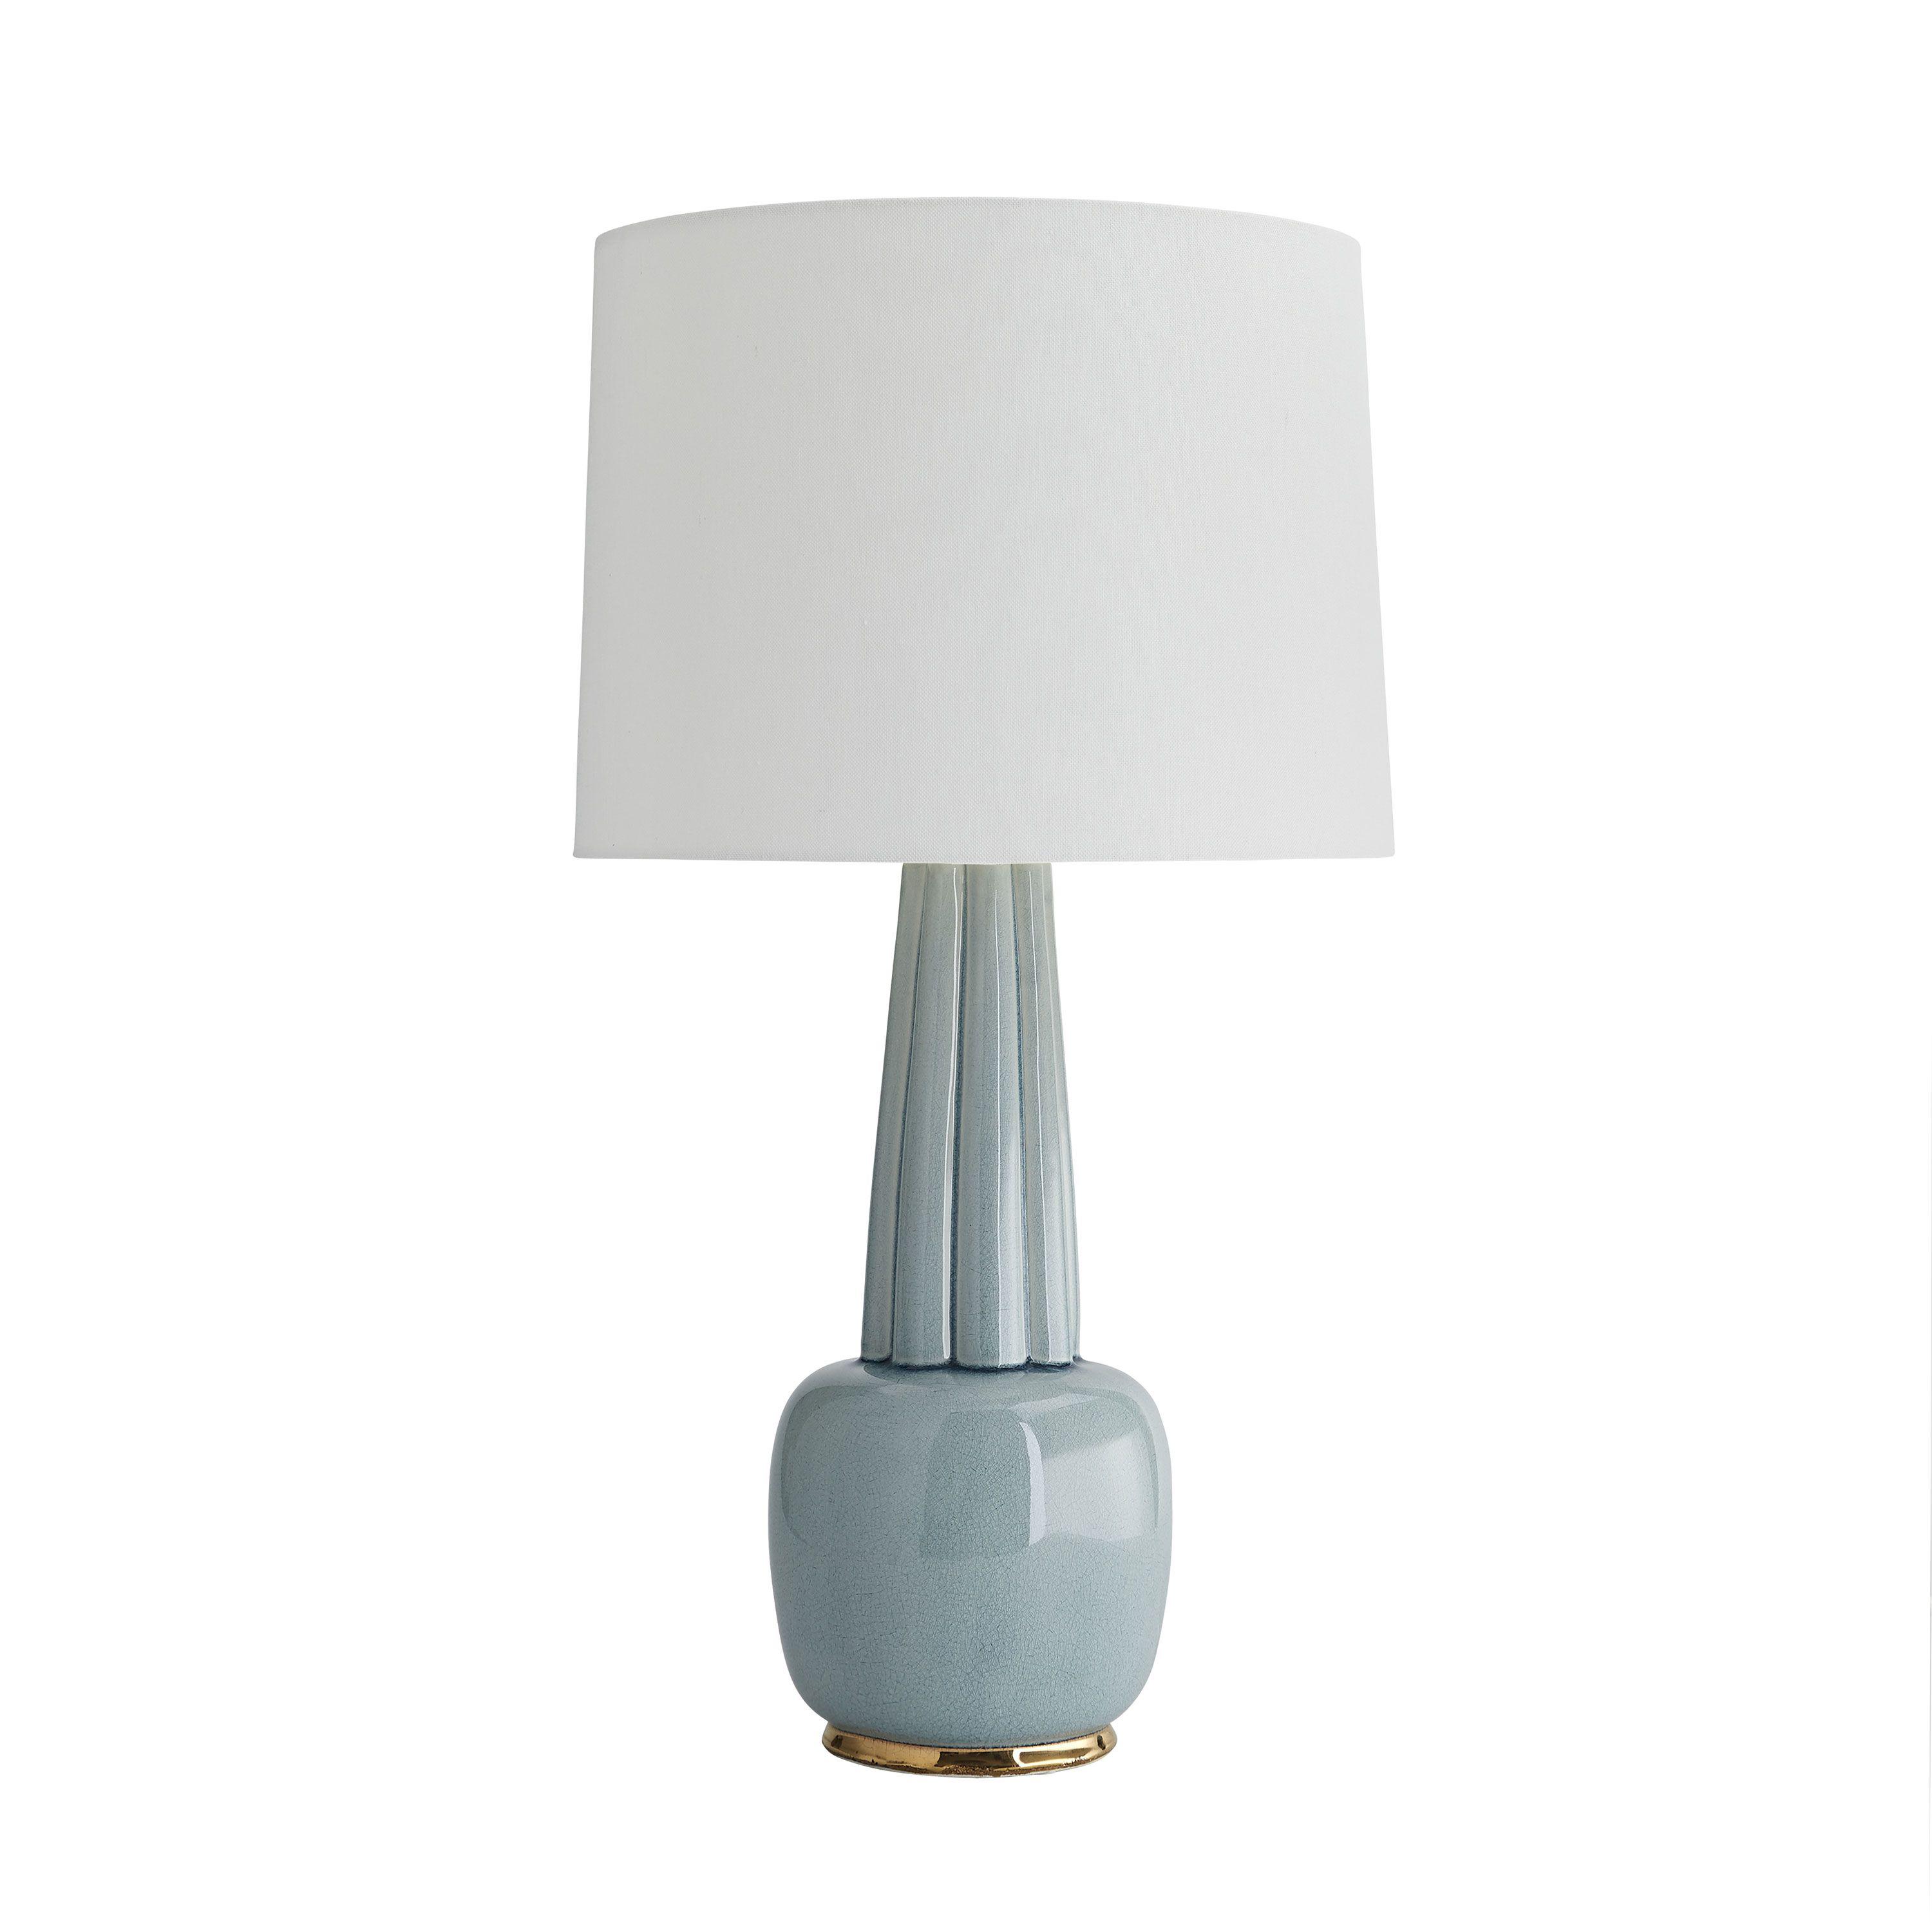 Купить Настольная лампа Arlington Lamp в интернет-магазине roooms.ru